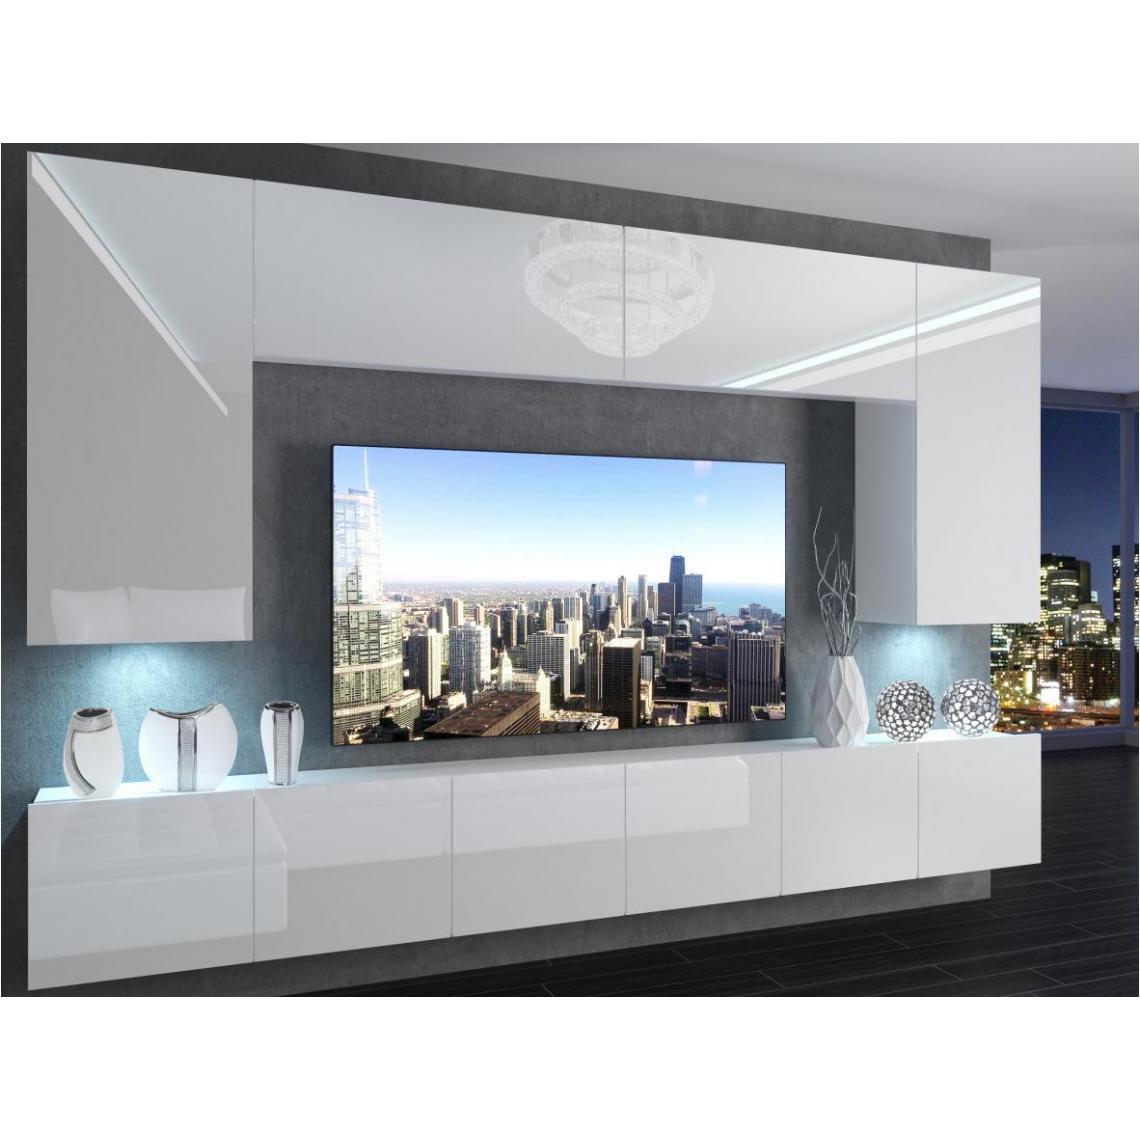 Hucoco - SILLEA - Ensemble meubles TV + LED - Unité murale style moderne - Largeur 300 cm - Mur TV à suspendre - Blanc - Meubles TV, Hi-Fi